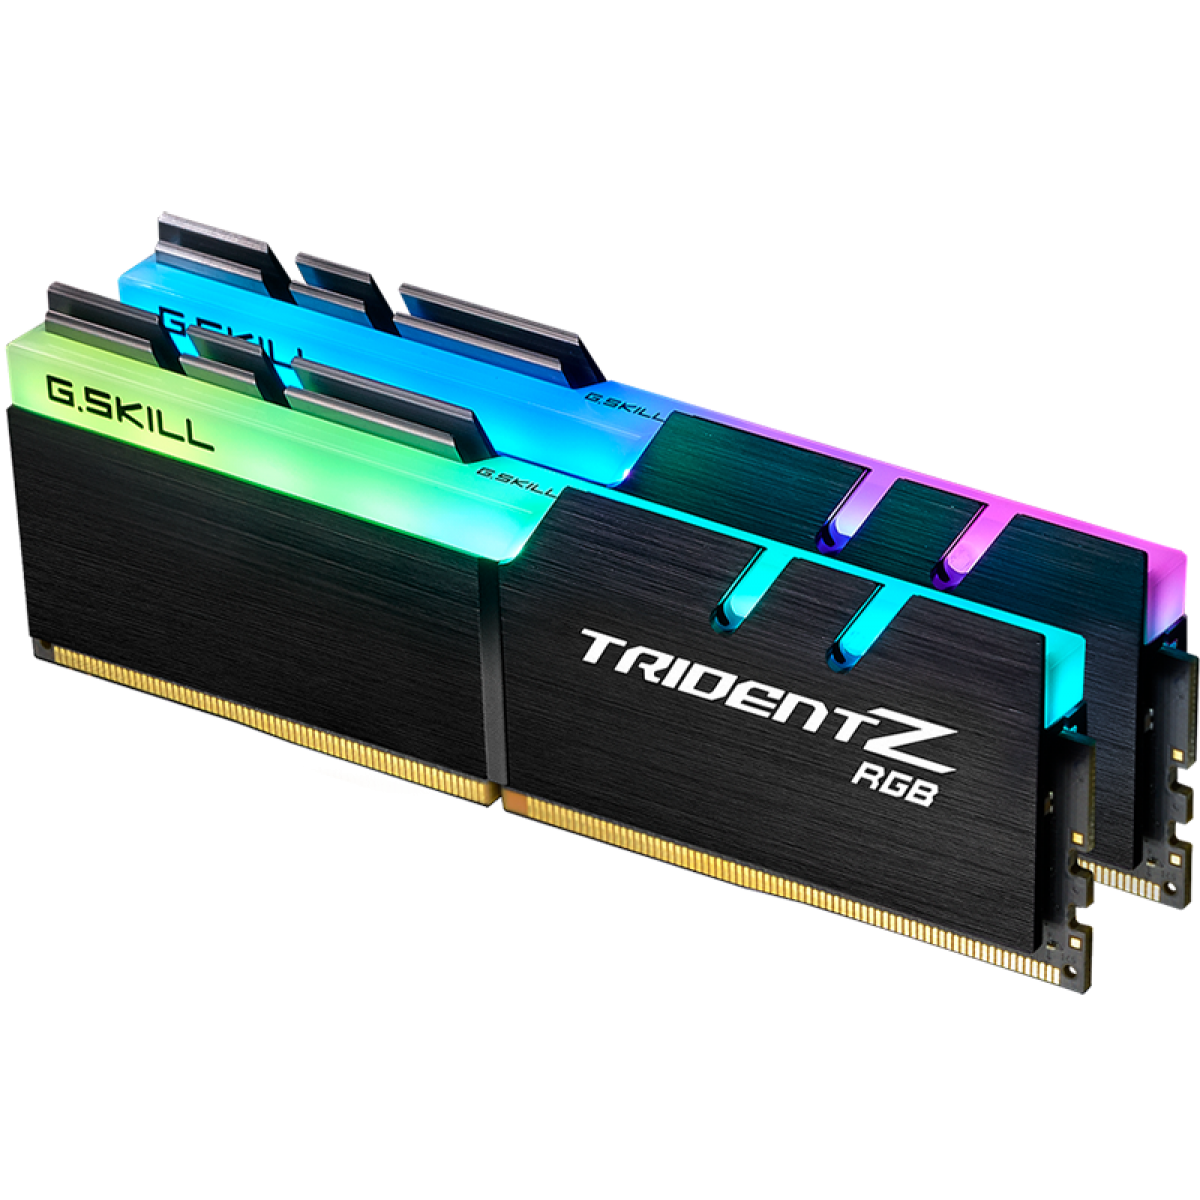 Memória DDR4 G.Skill Trident Z RGB AMD, 16GB (2x8GB) 3600MHz, F4-3600C18D-16GTZRX